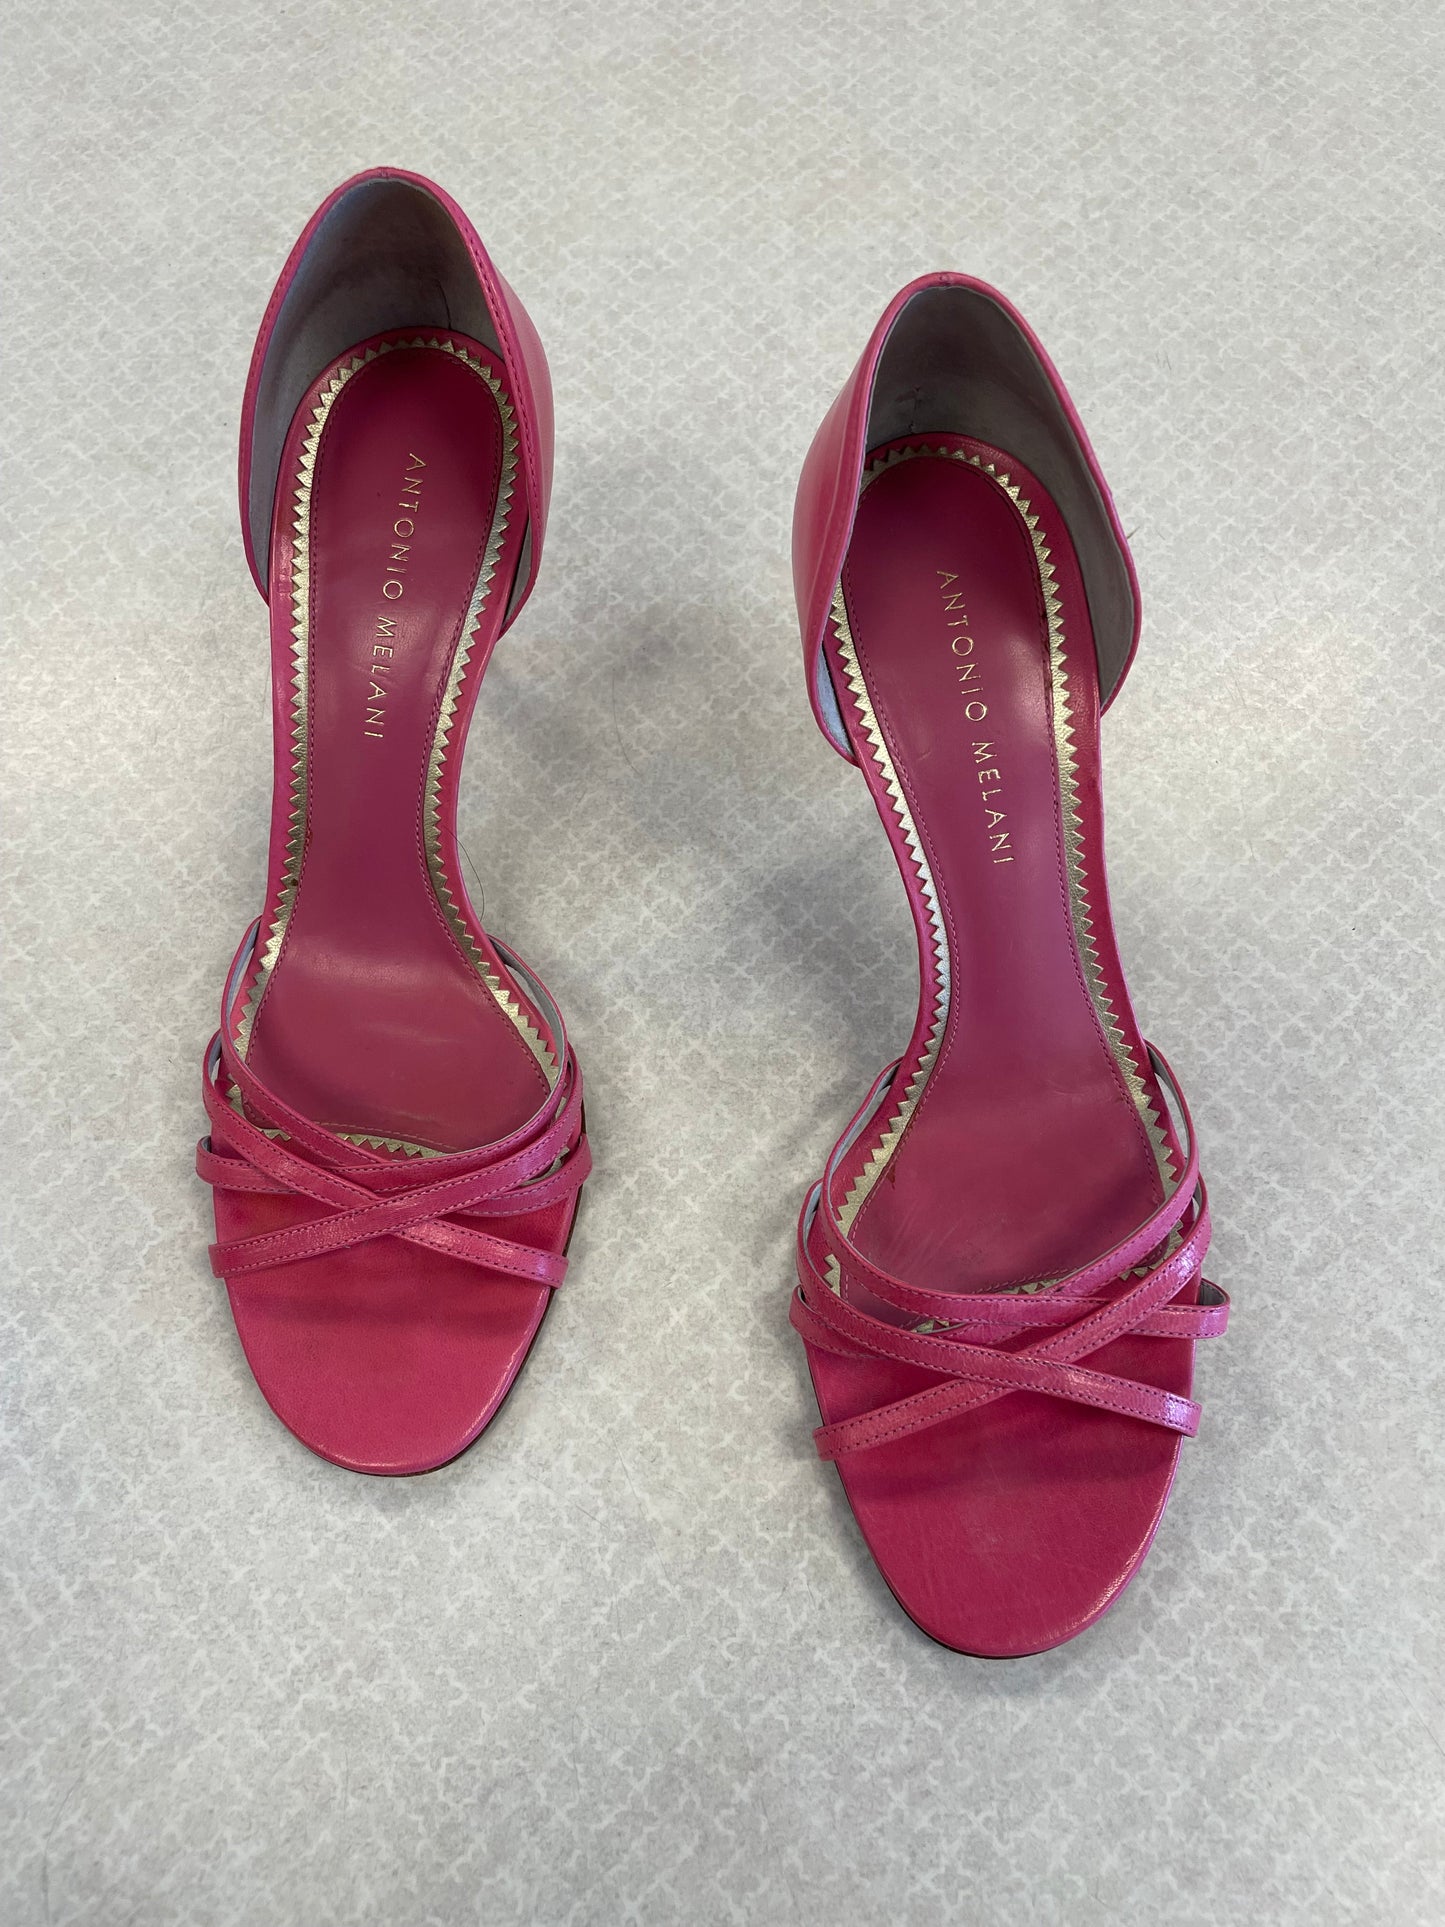 Pink Shoes Heels Kitten Antonio Melani, Size 7.5